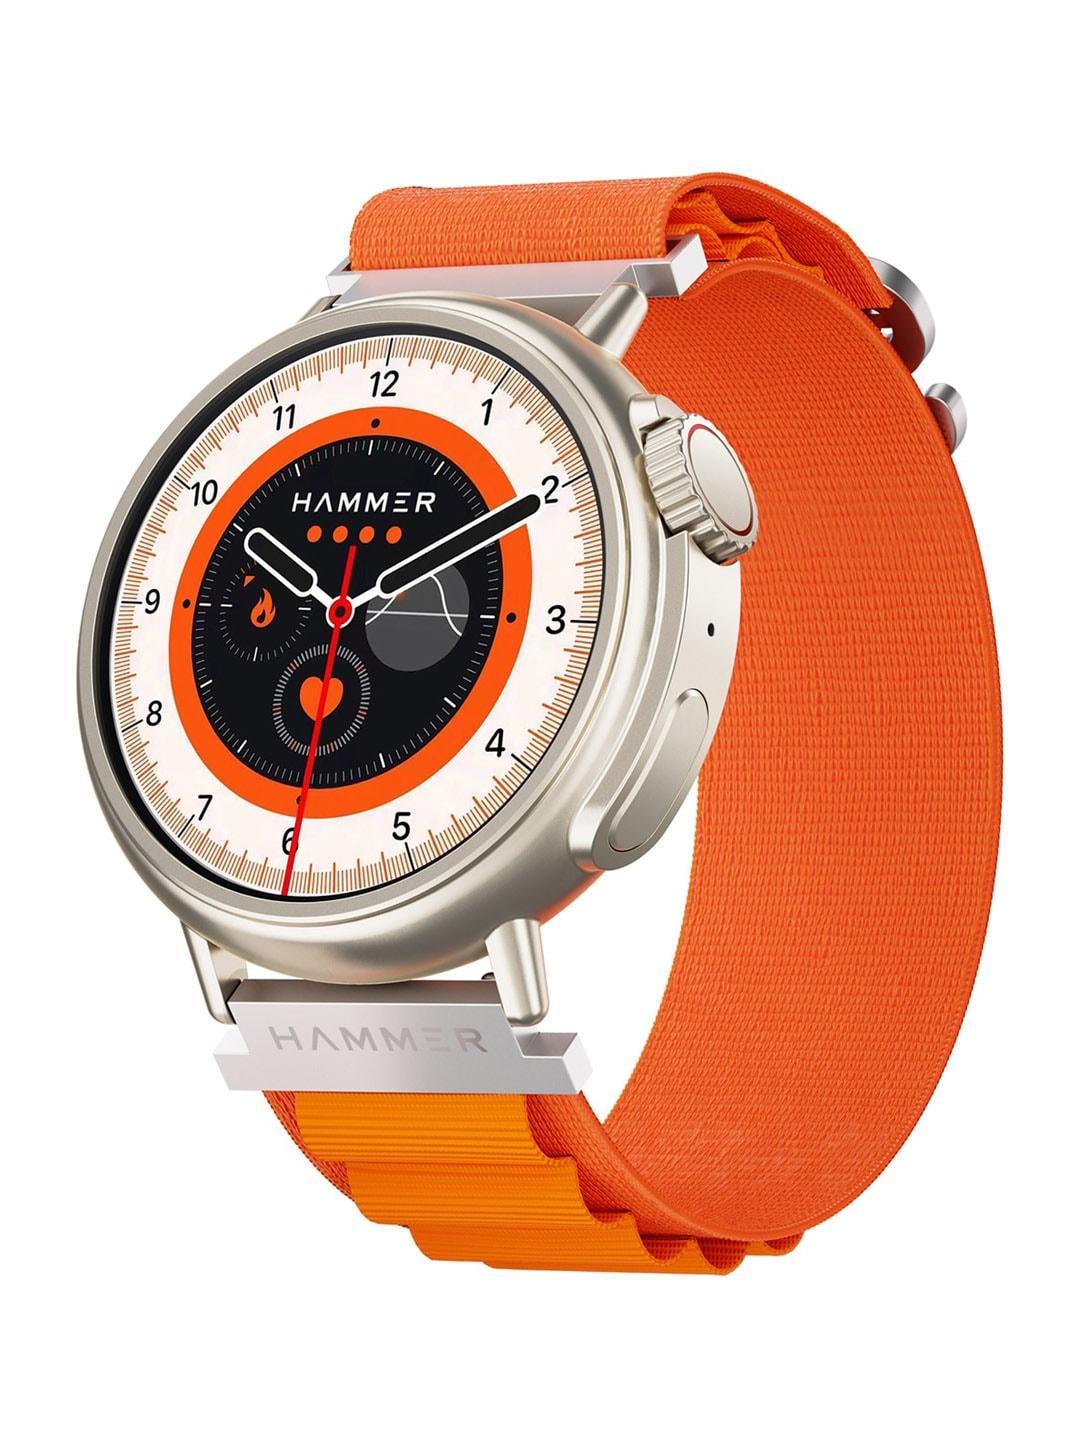 HAMMER Pop Orange Active 3.0 1.39" Round Dial Always On Display Smart Watch